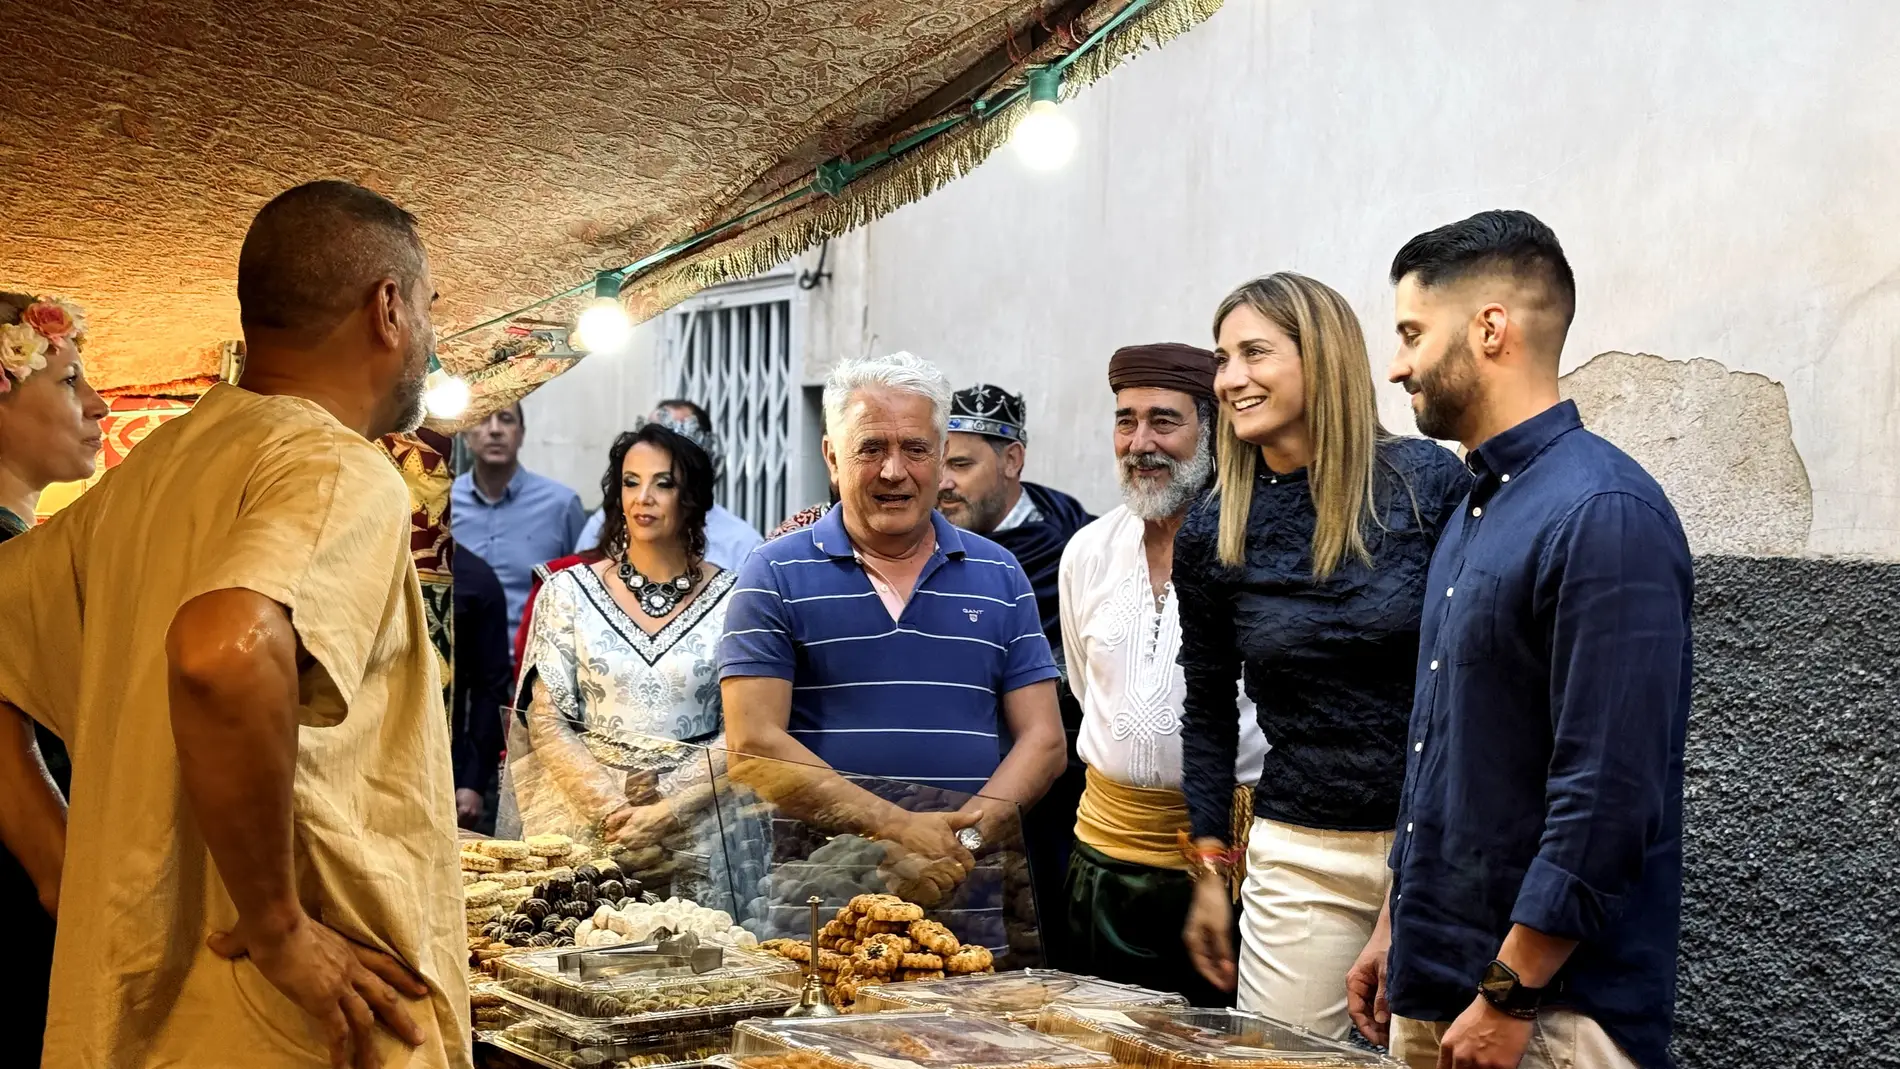 La alcaldesa de Archena, Patricia Fernández, visitó el mercadillo medieval